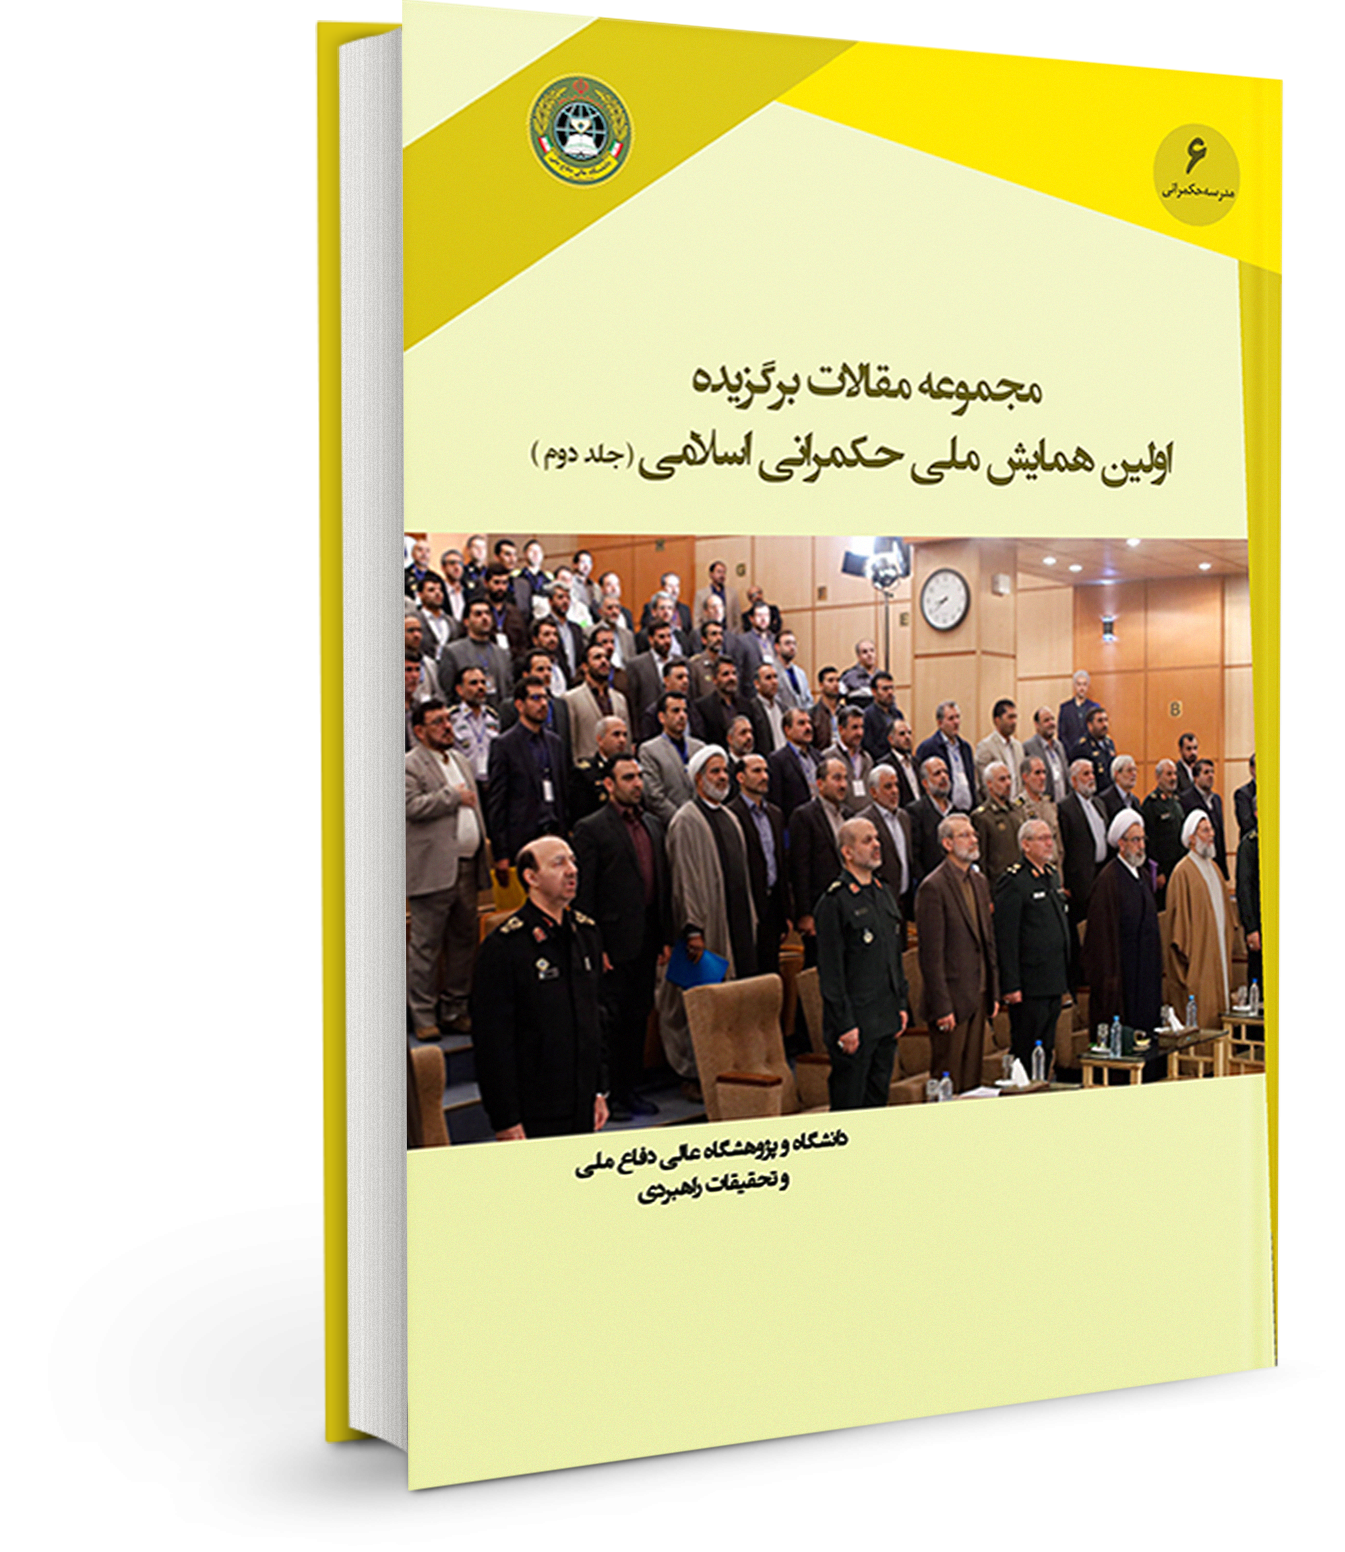 مجموعه مقالات برگزیده اولین همایش ملی حکمرانی اسلامی (جلد دوم)